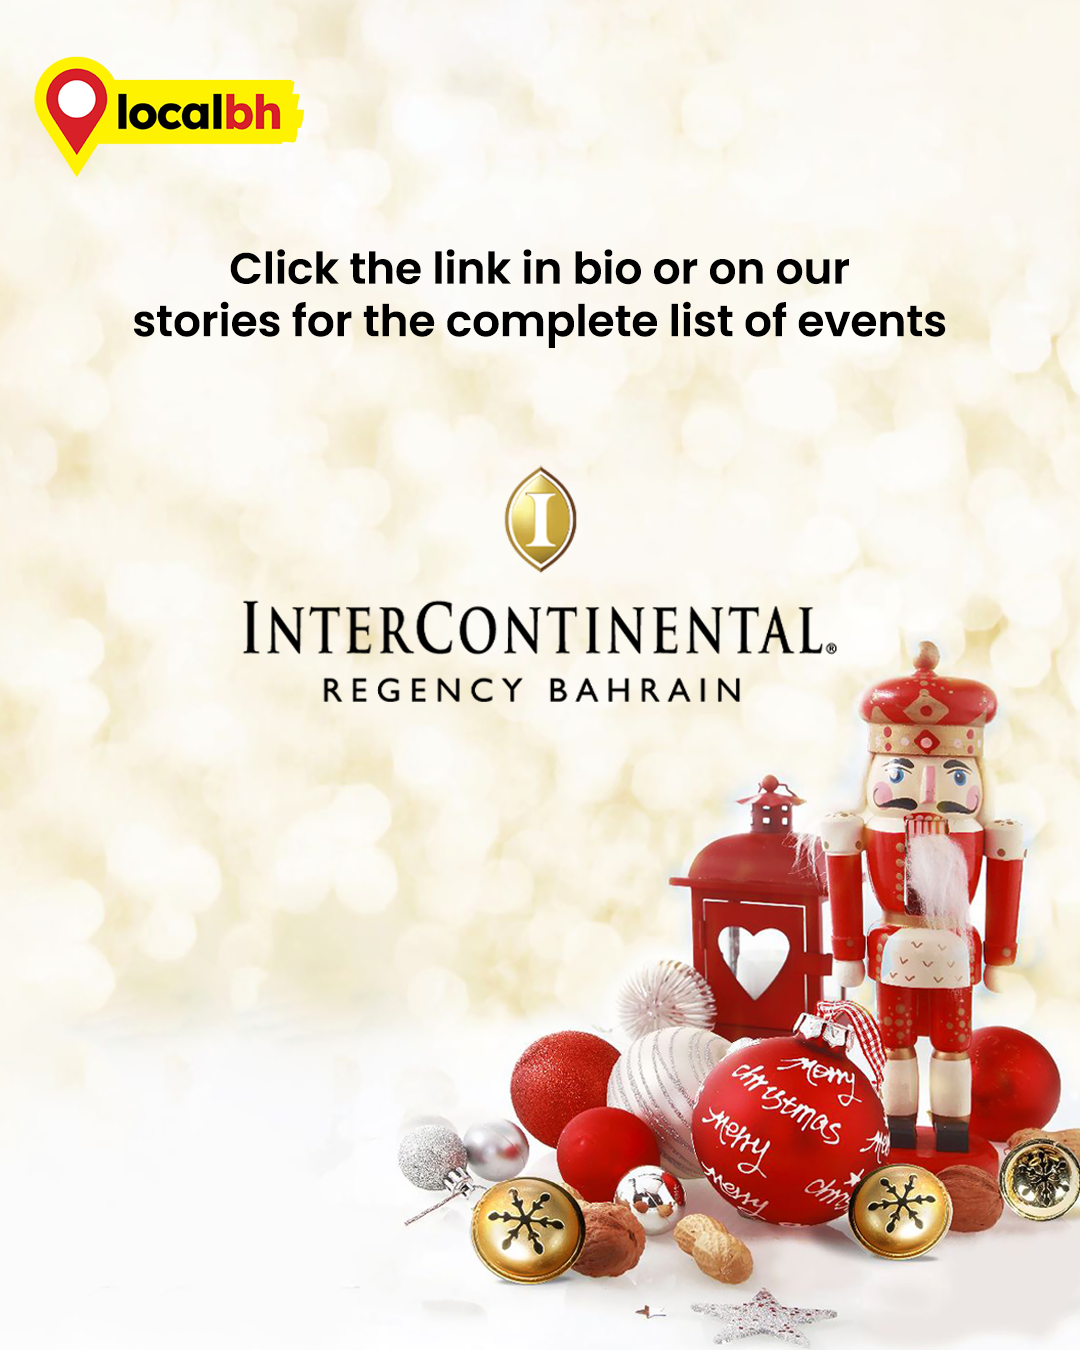 intercontinental hotel Intercontinental InterContinental Bahrain Intercontinental Hotels